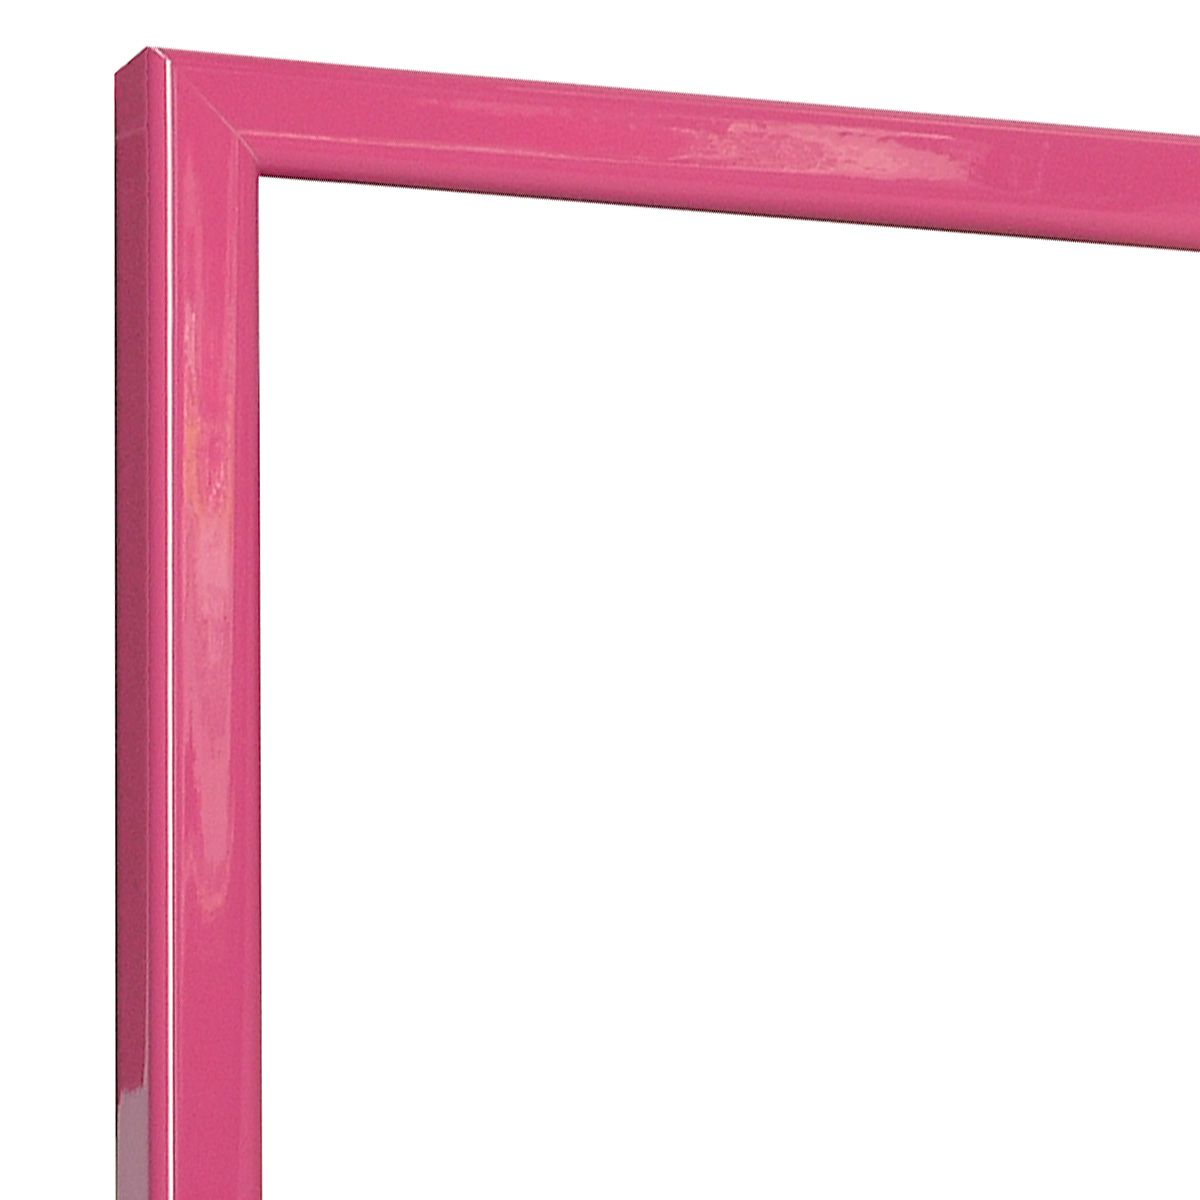 Bilderleiste keilgezinkte Pinie 14 mm breit - Rosa glänzend - Ecke